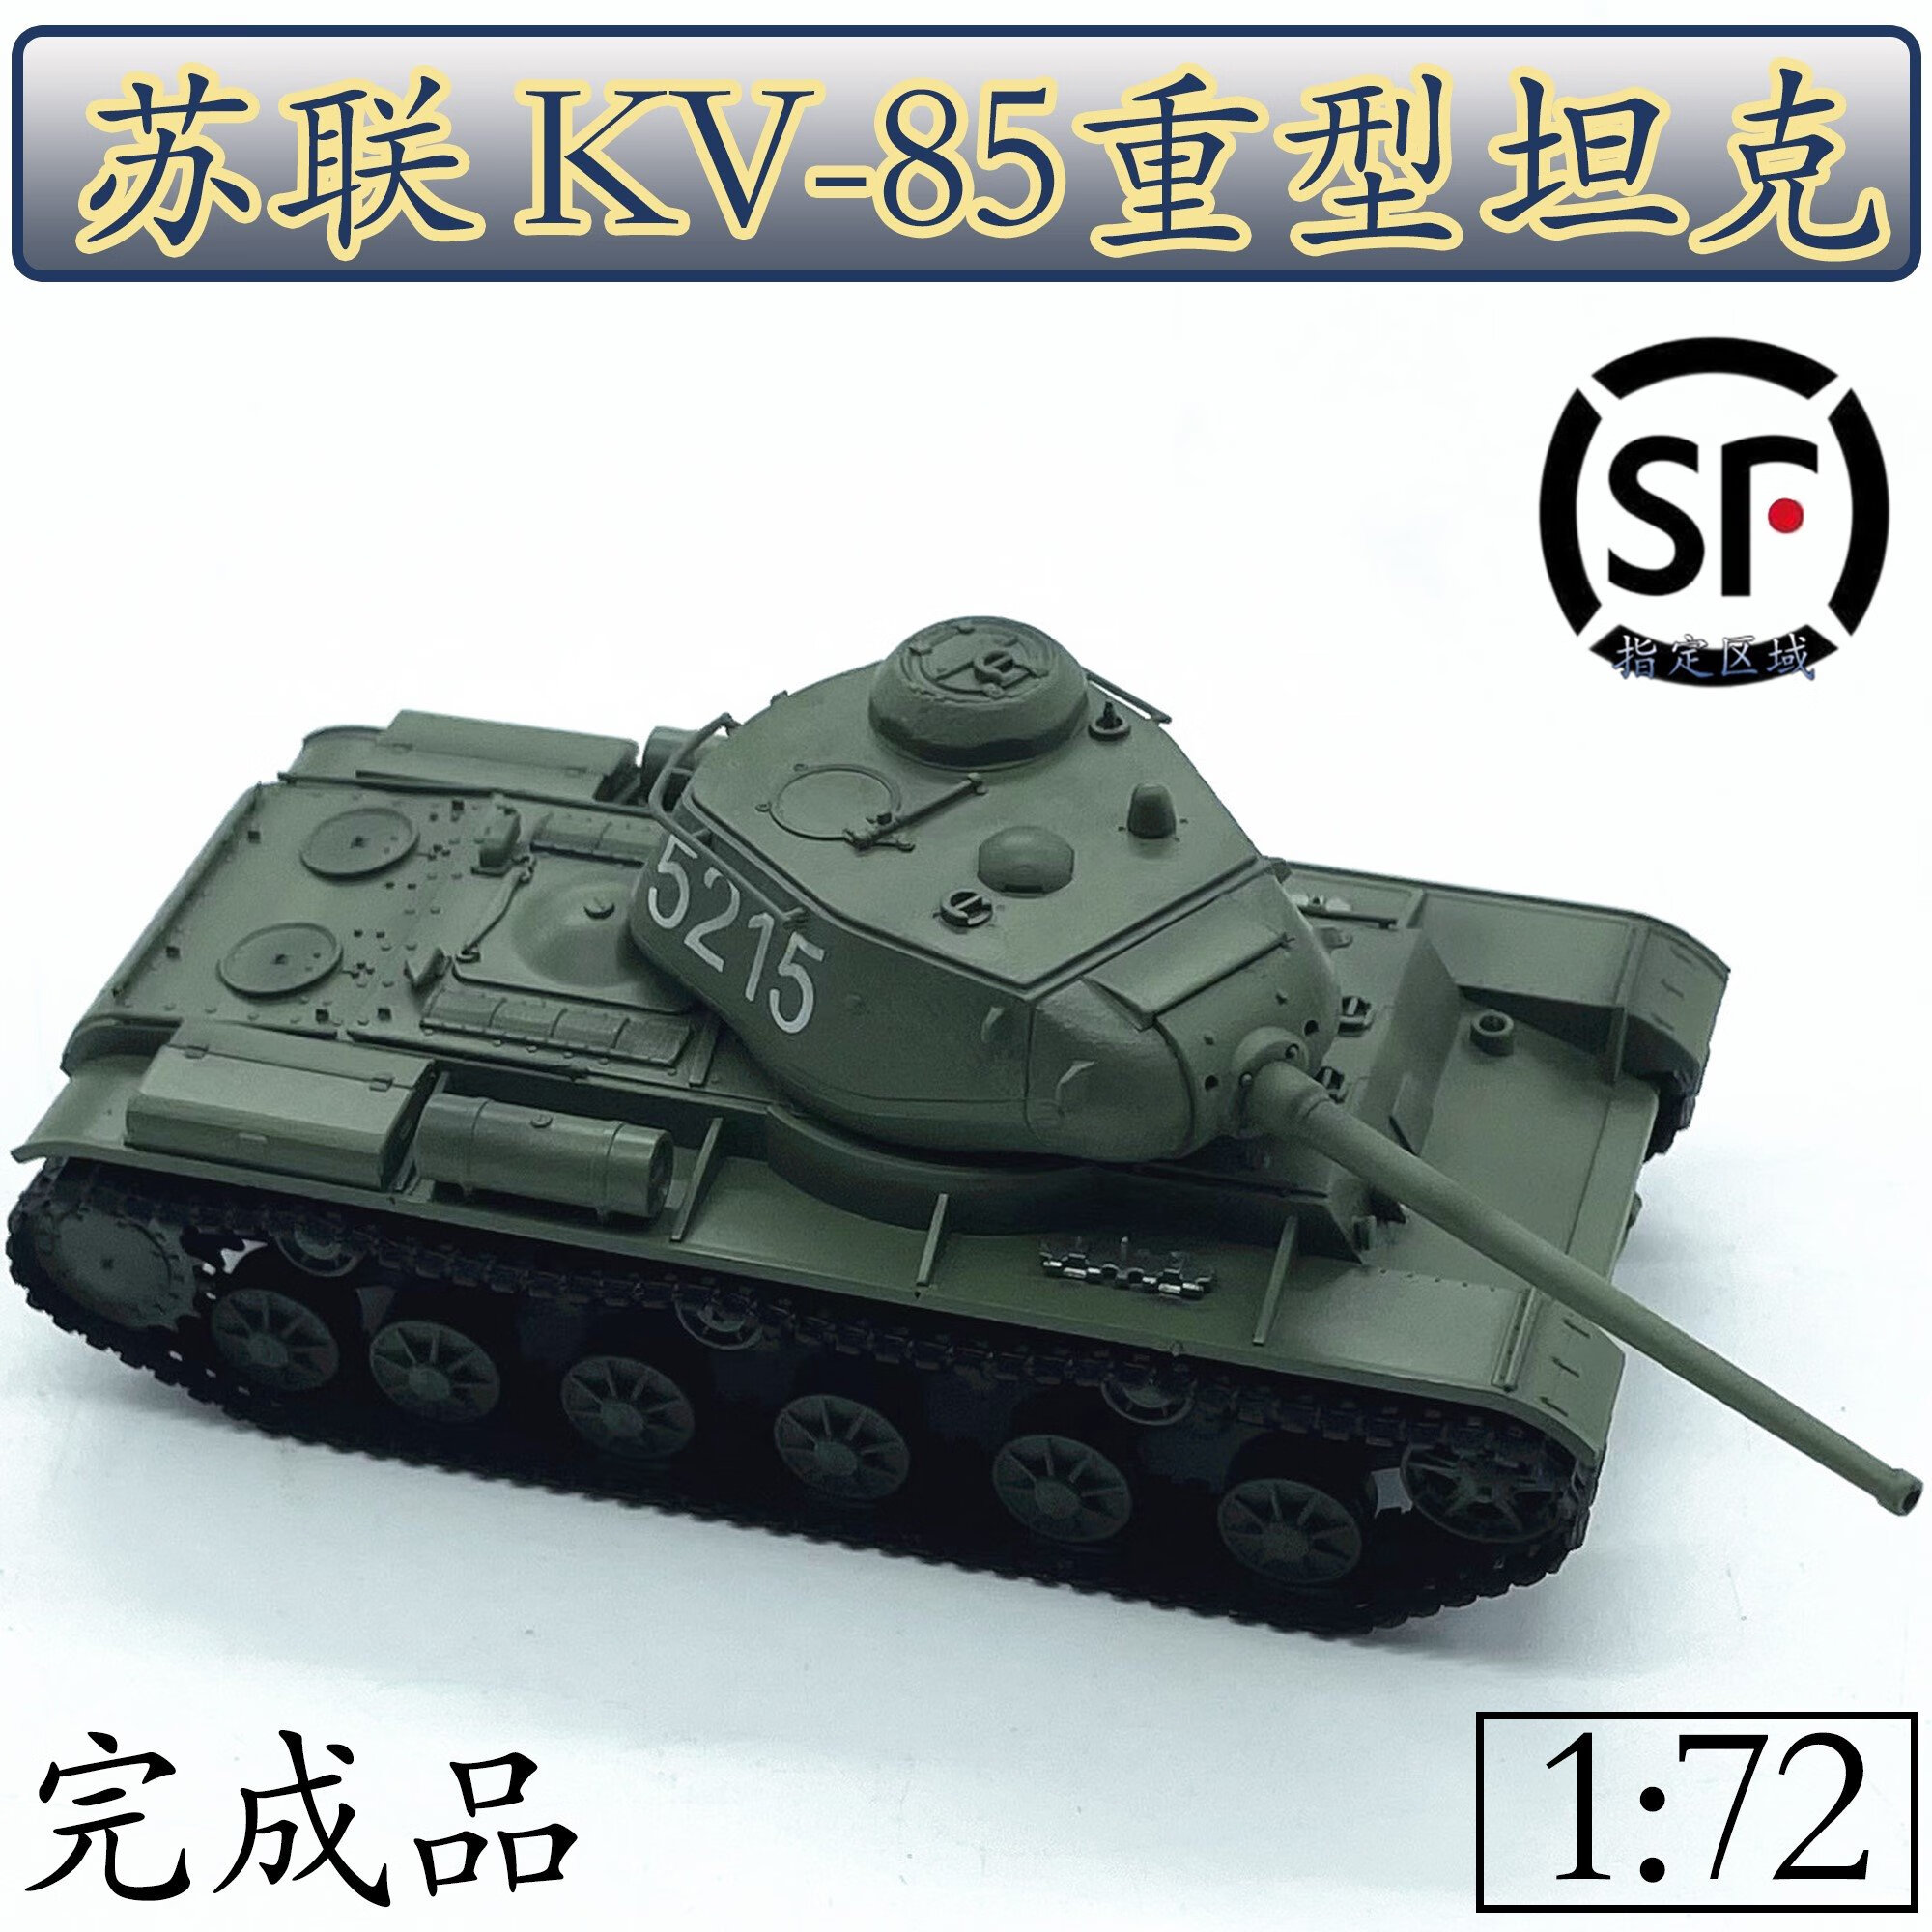 天智星二战苏联坦克模型1:72苏联KV85重型坦克白色5215成品摆件35130